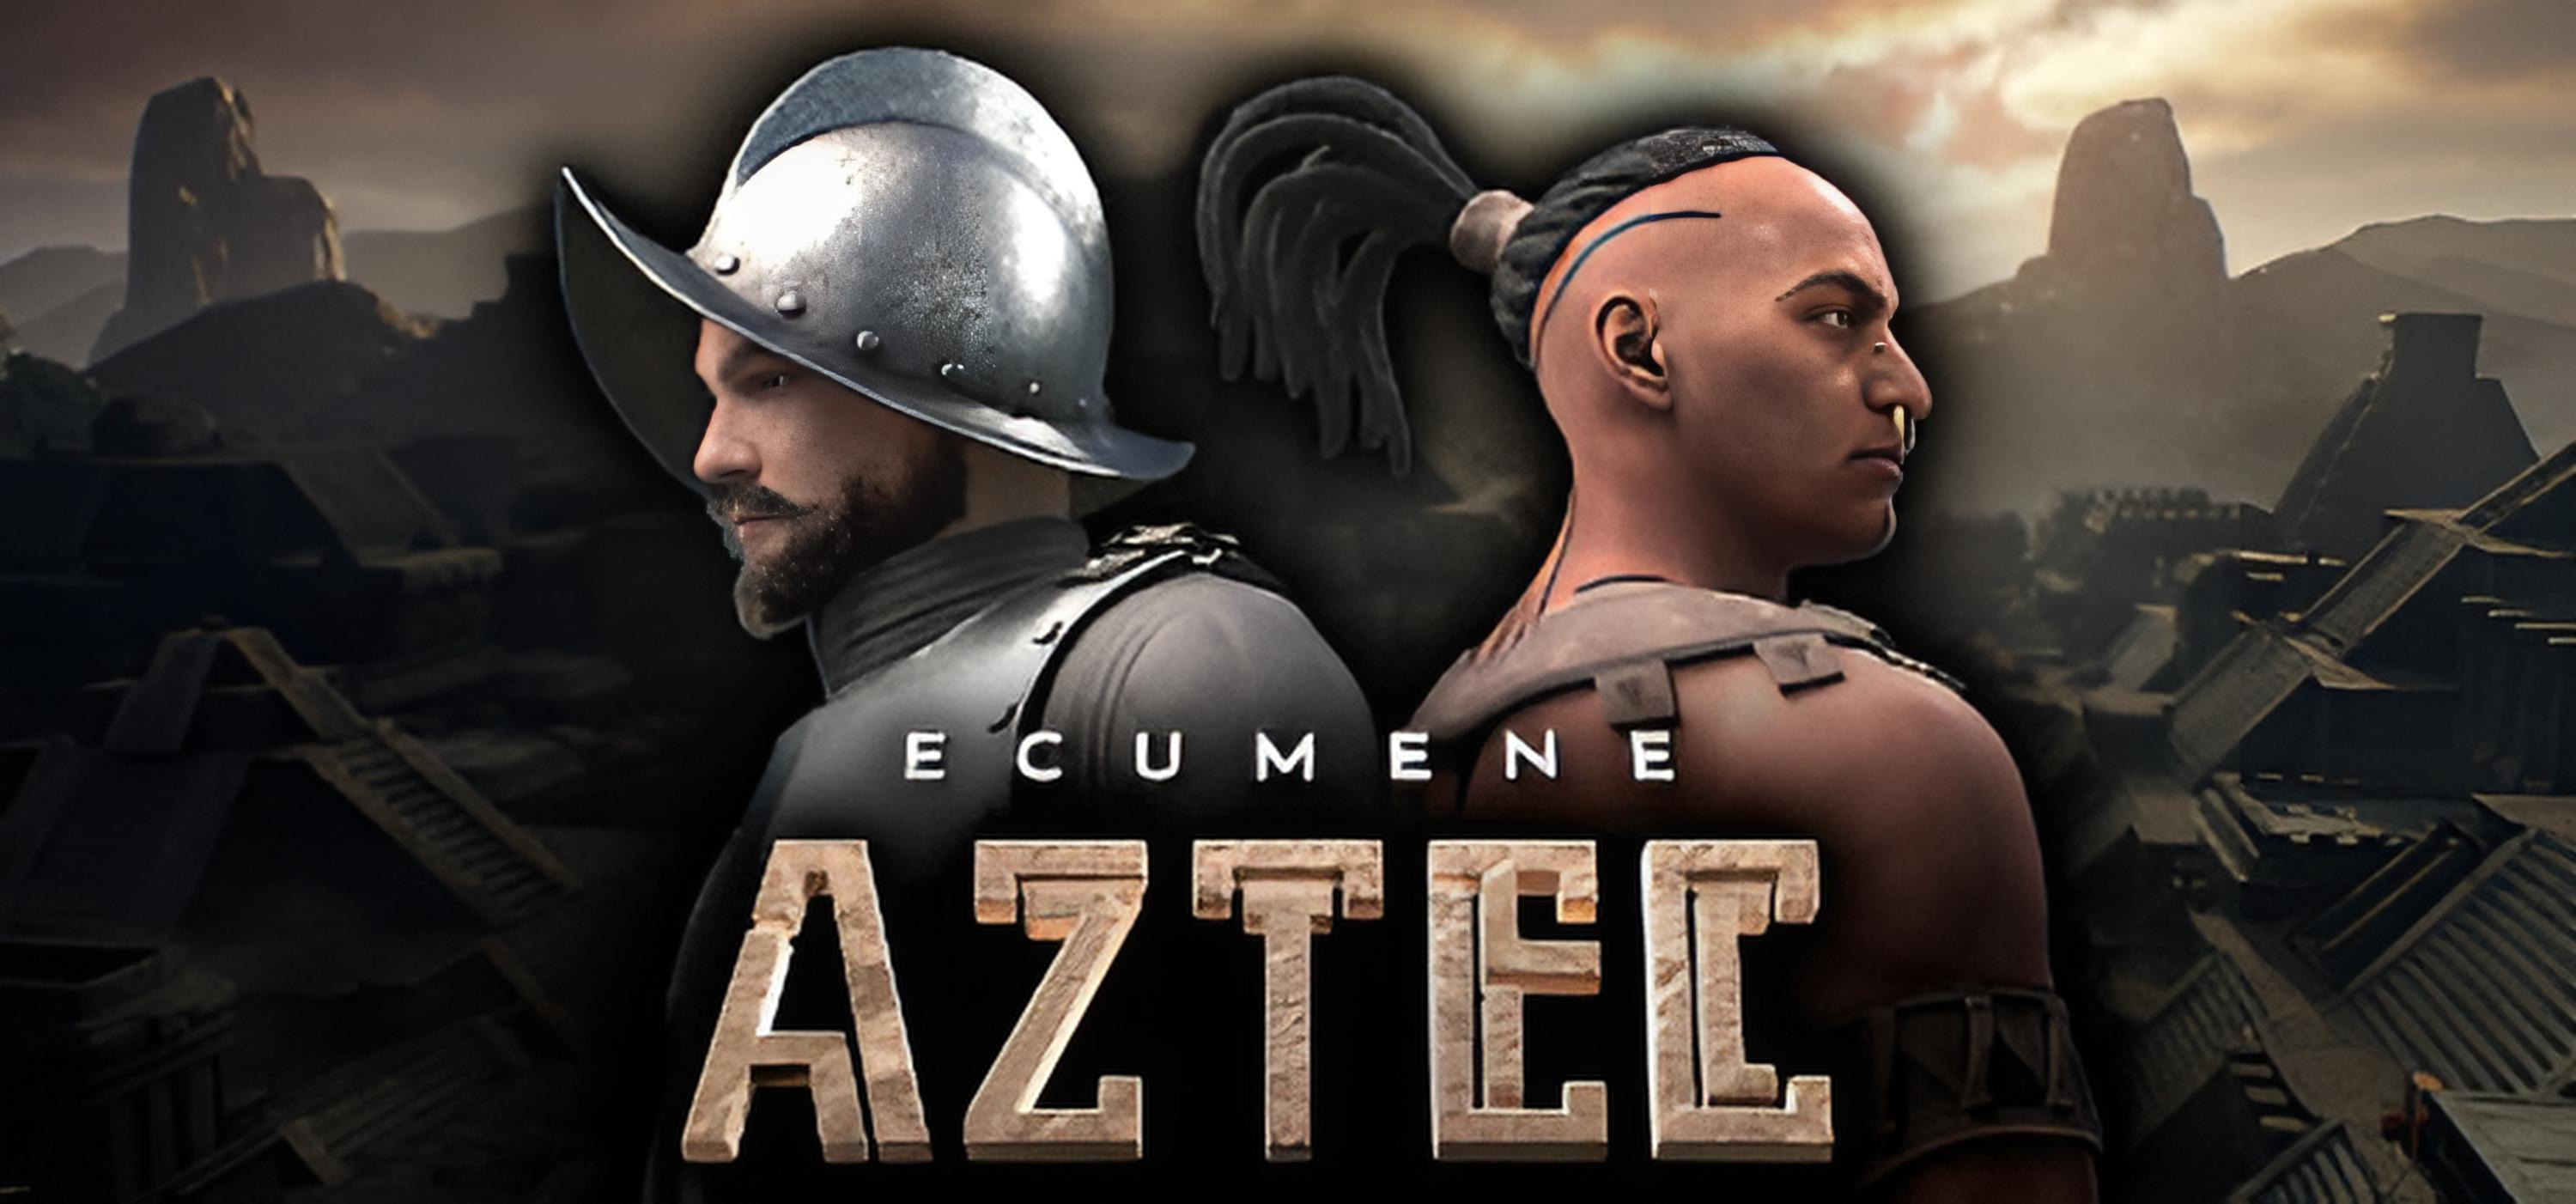 Обложка игры Ecumene Aztec